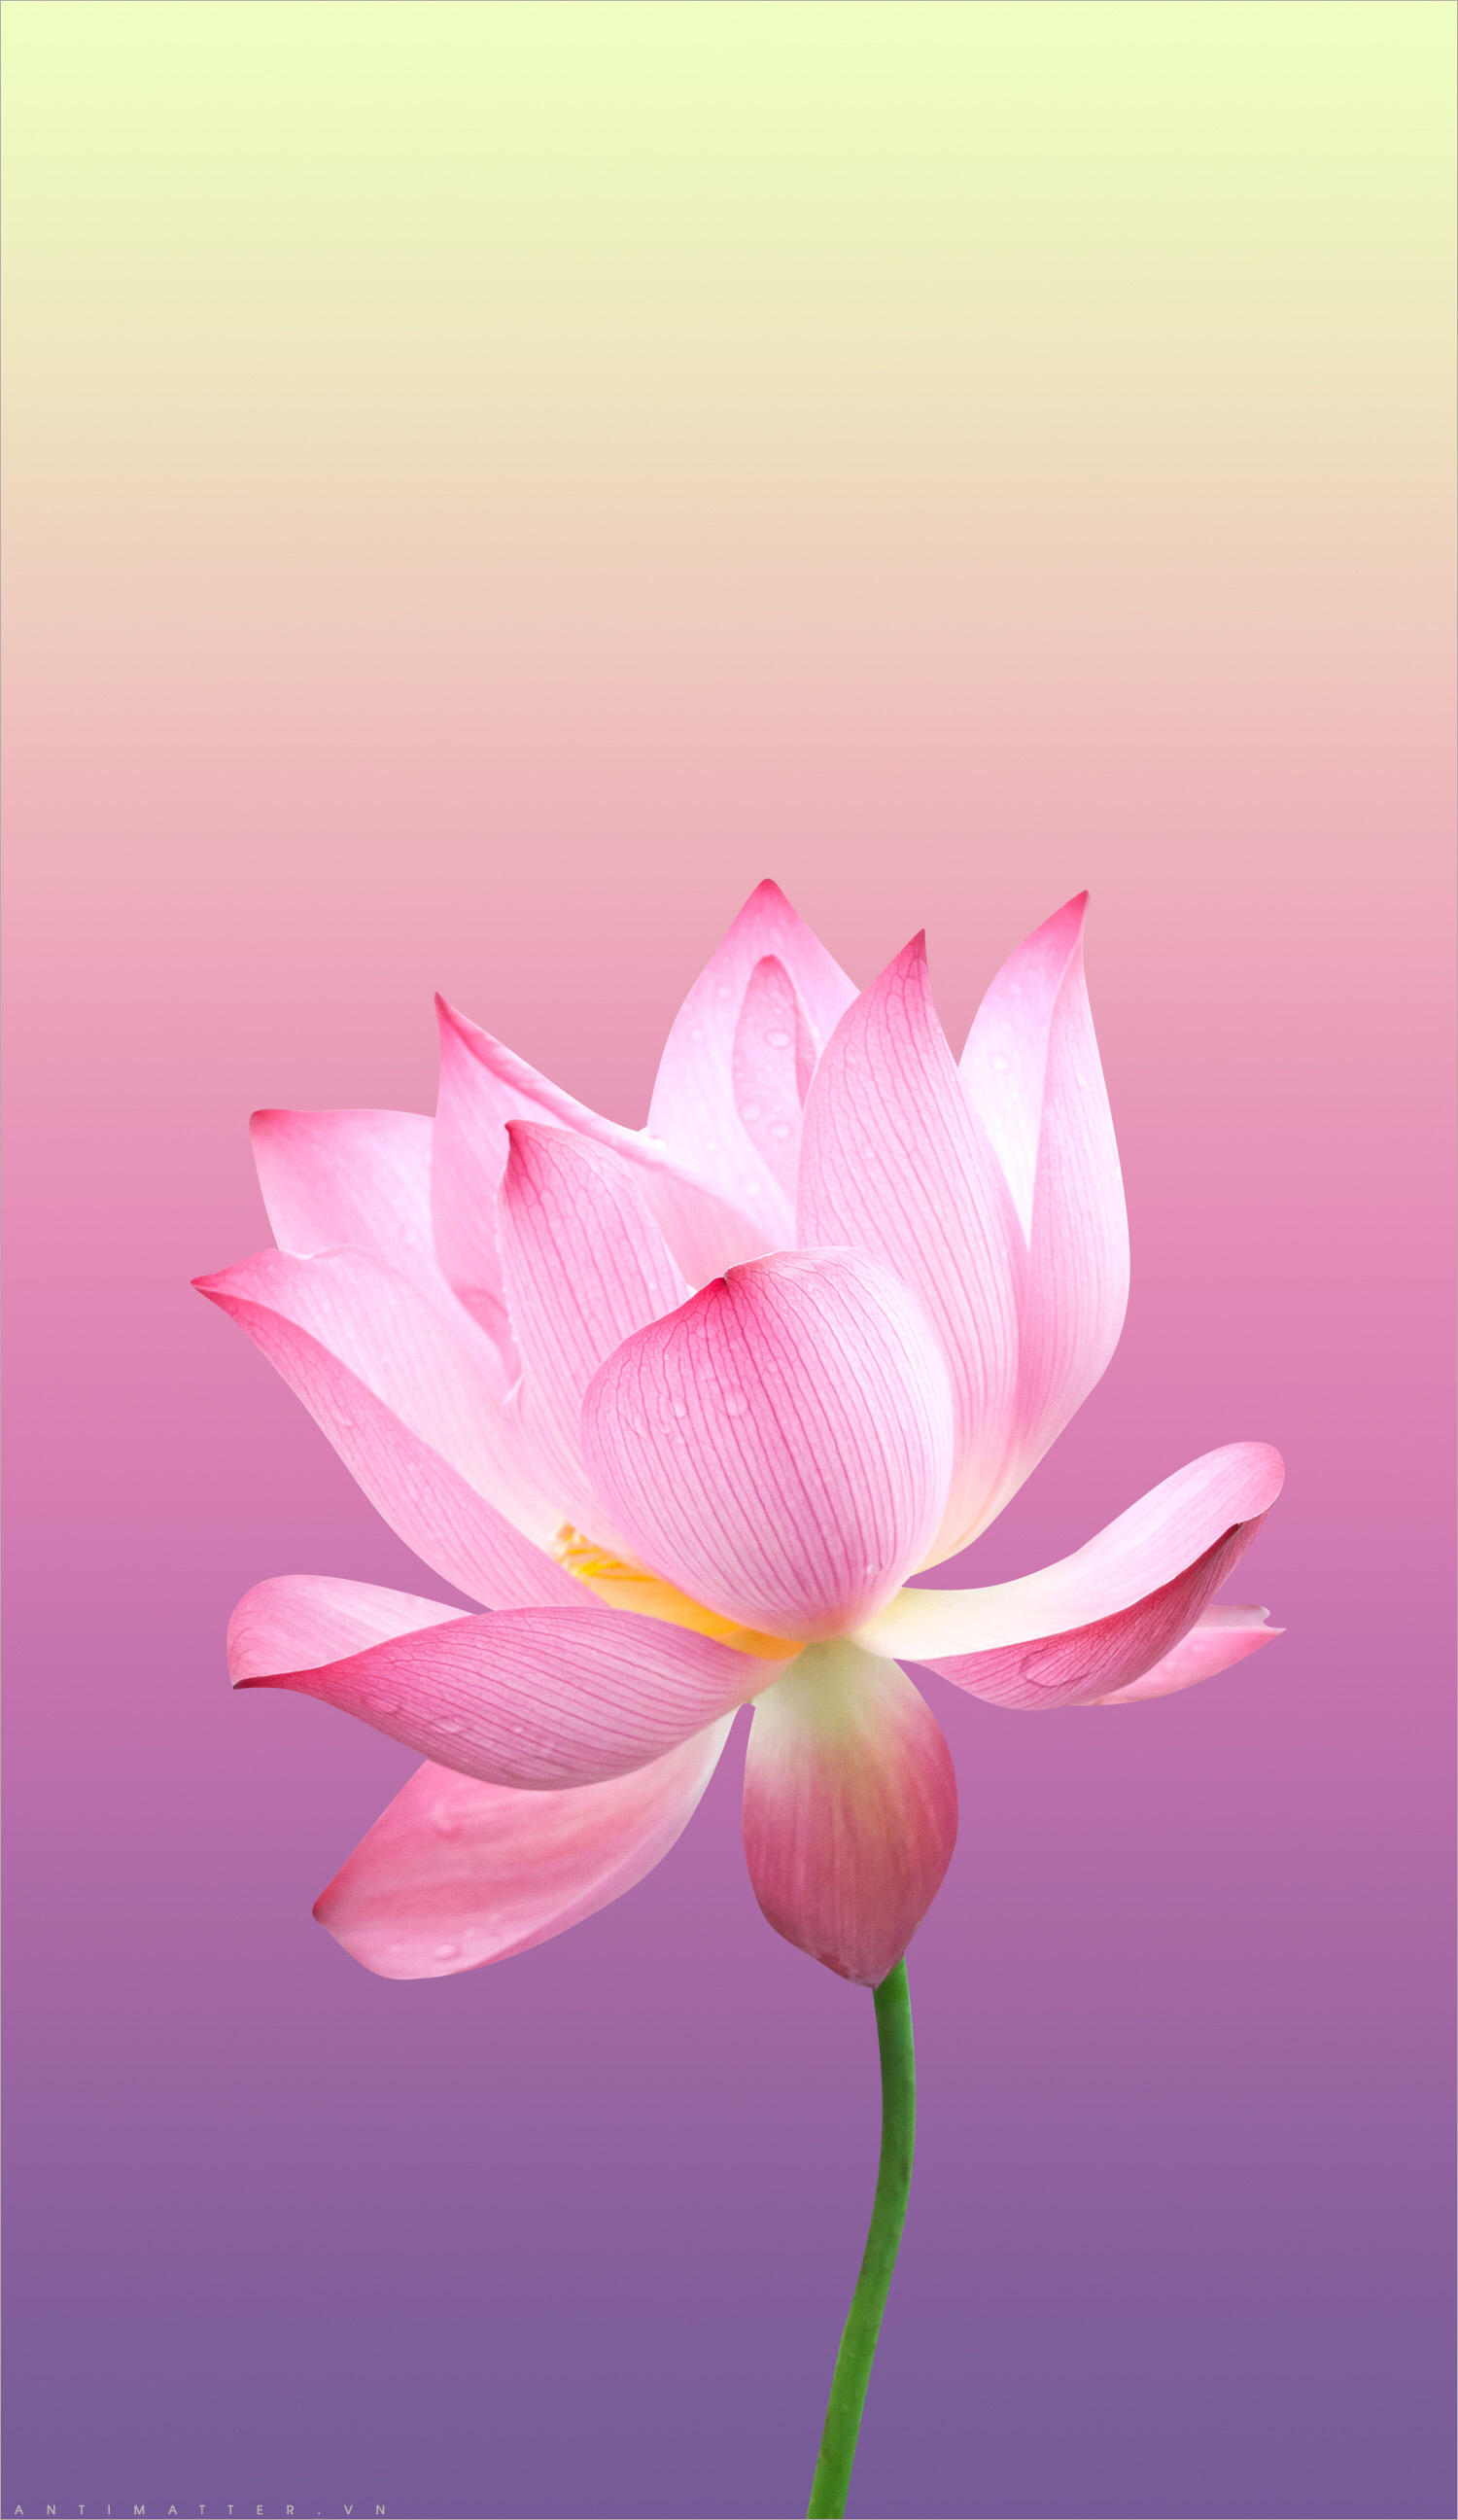 Ý nghĩa hoa sen trong Phật giáo  hình ảnh hoa sen thật là hữu lý và rất  thú vị  HOA ĐĂNG ĐỨC LƯƠNG